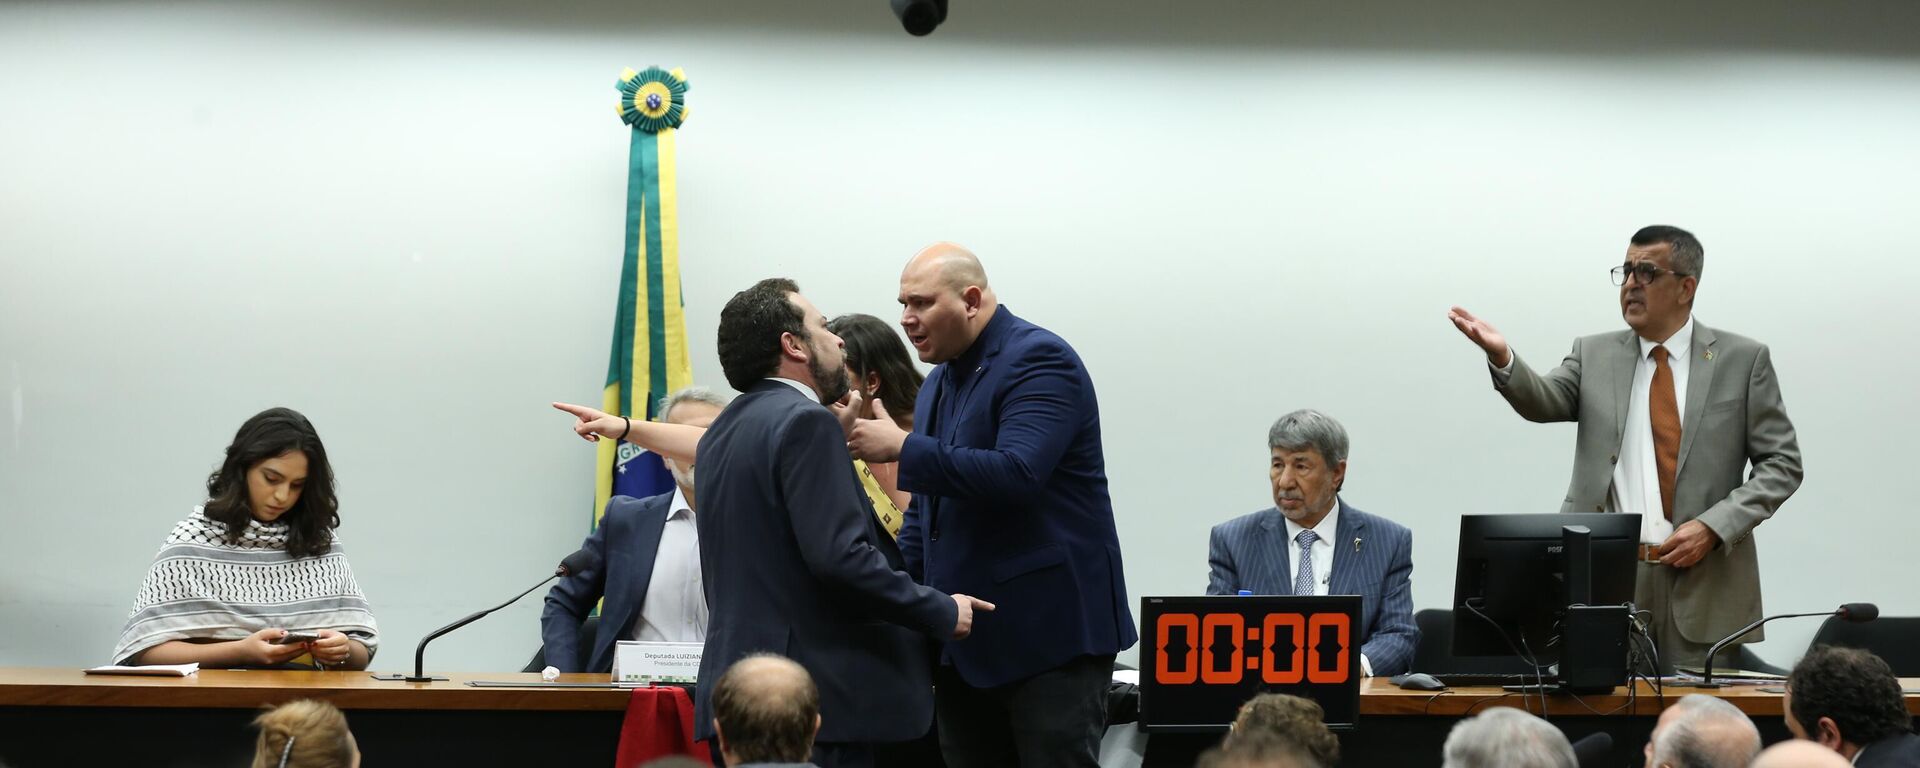 Ato na Câmara dos Deputados a favor da Palestina causa confusão entre os deputados Guilherme Boulos (Psol-SP), à esquerda, e Abilio Brunini (PL-MT), à direita - Sputnik Brasil, 1920, 14.11.2023